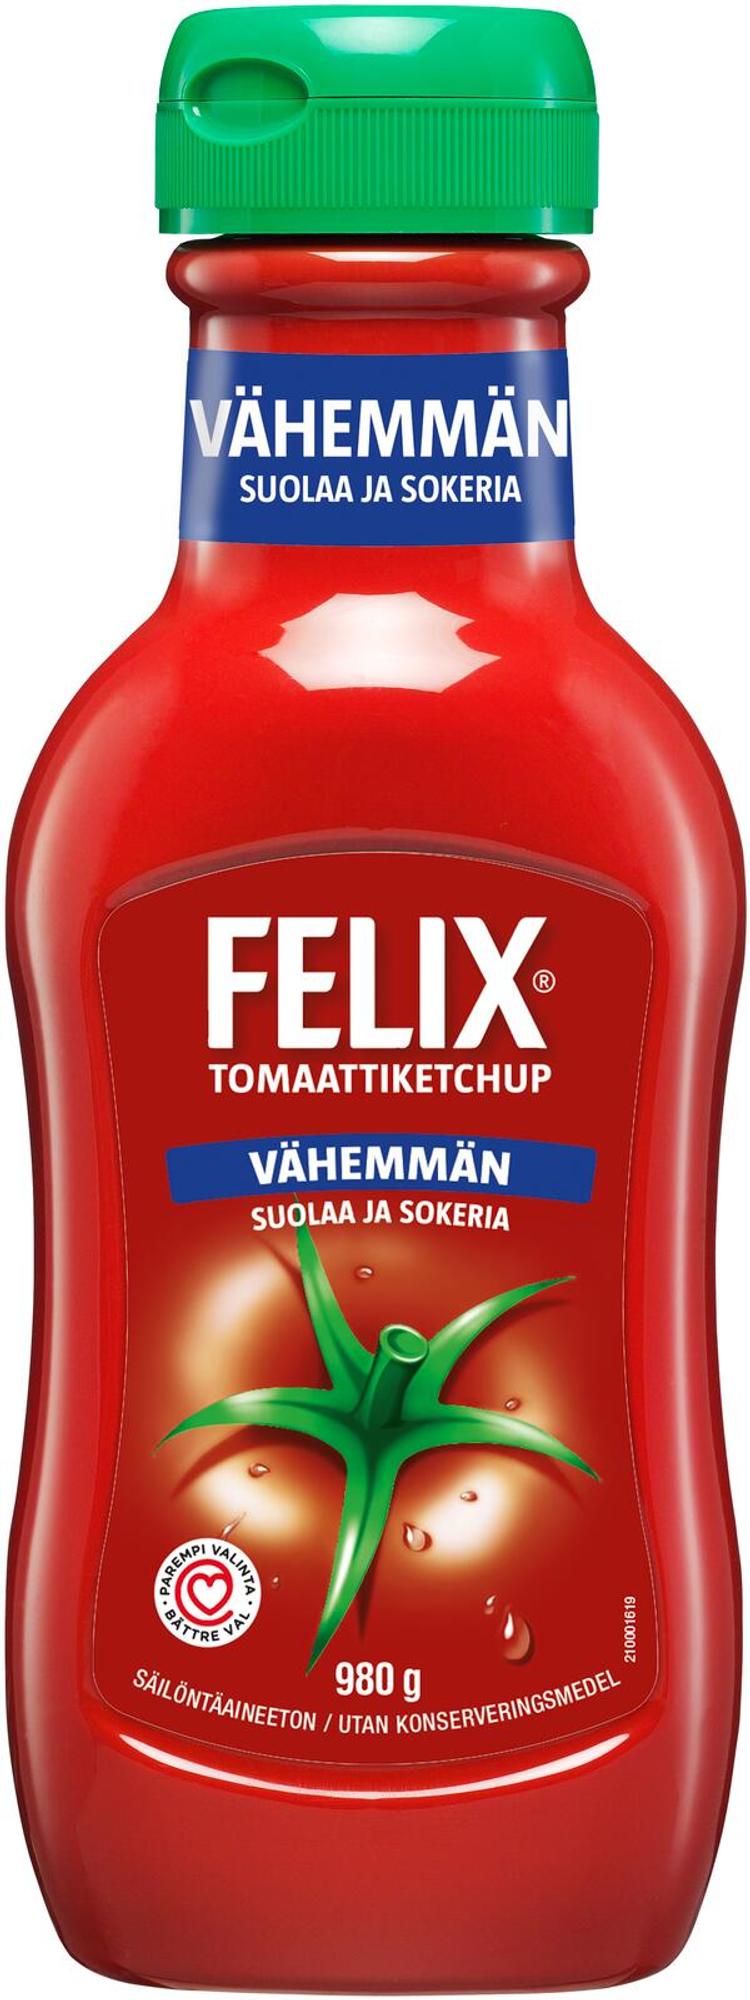 Felix vähemmän suolaa ja sokeria ketchup 980g